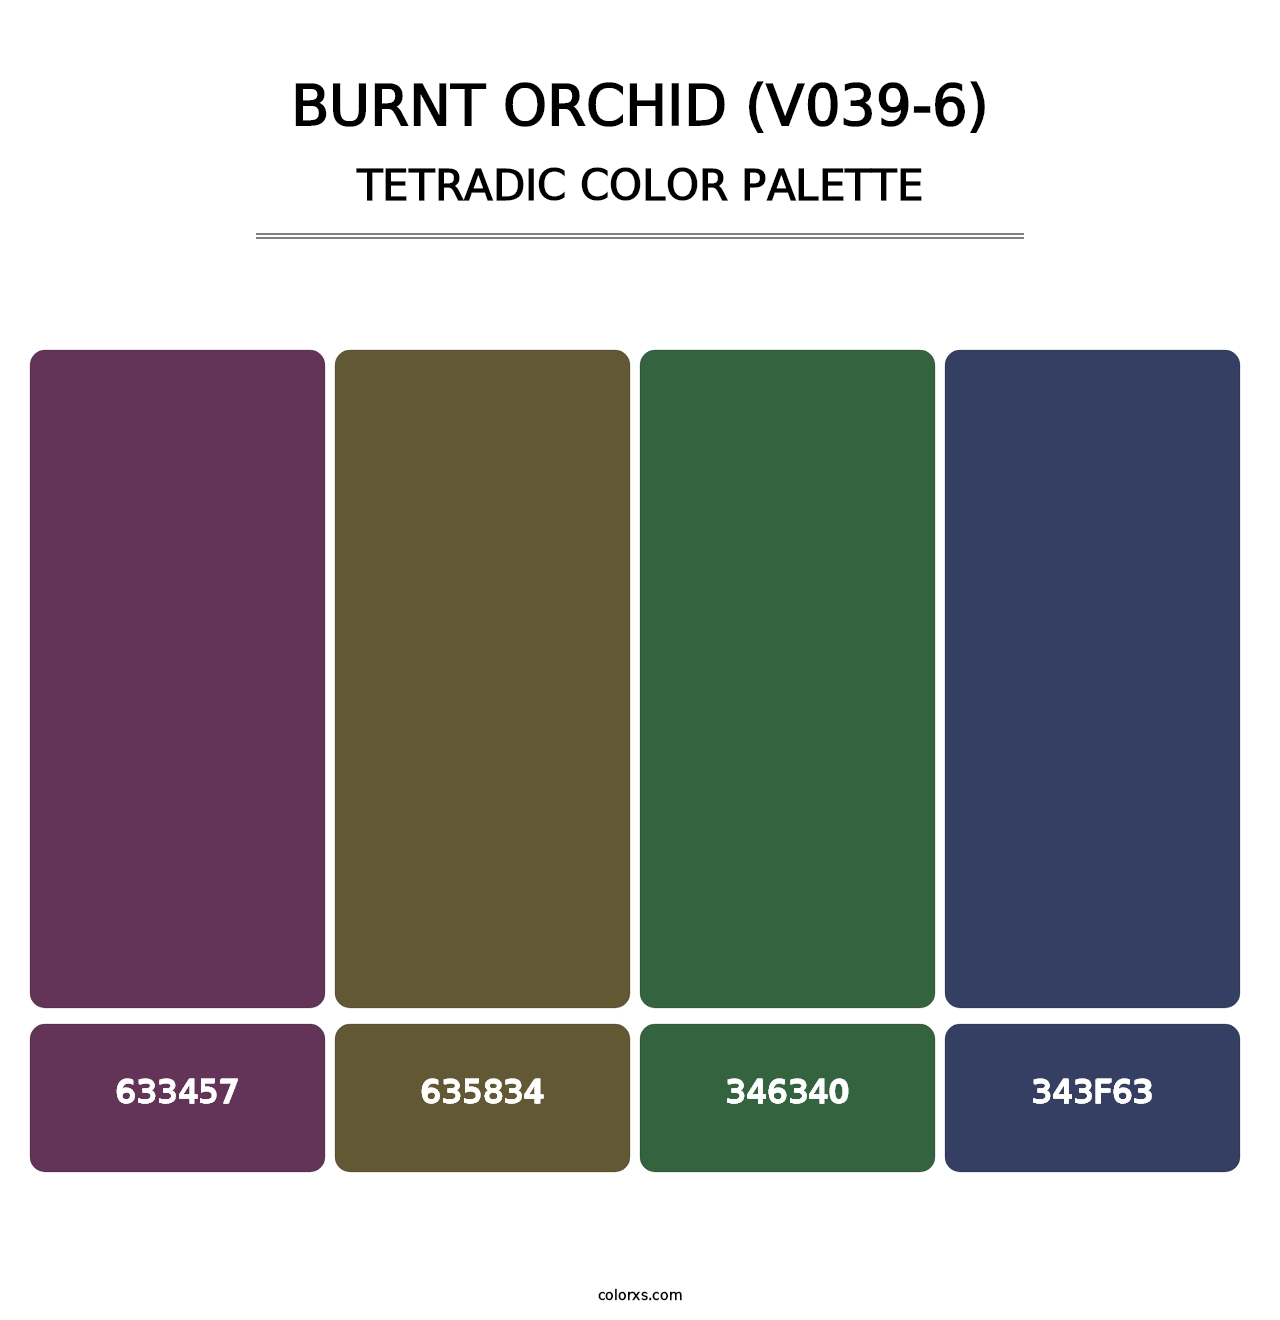 Burnt Orchid (V039-6) - Tetradic Color Palette